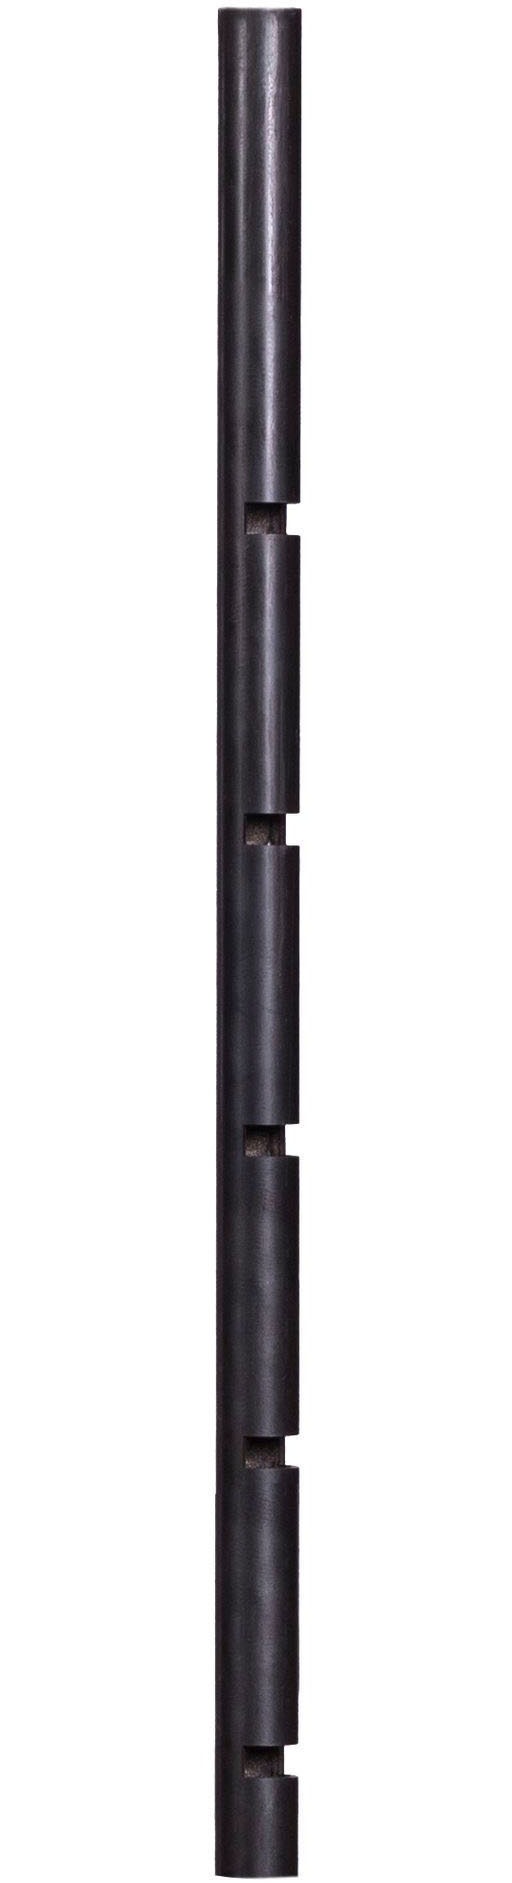 Feuerschalen-Mast, für Feuerschale Bandito und Montana X, 77 cm Höhe